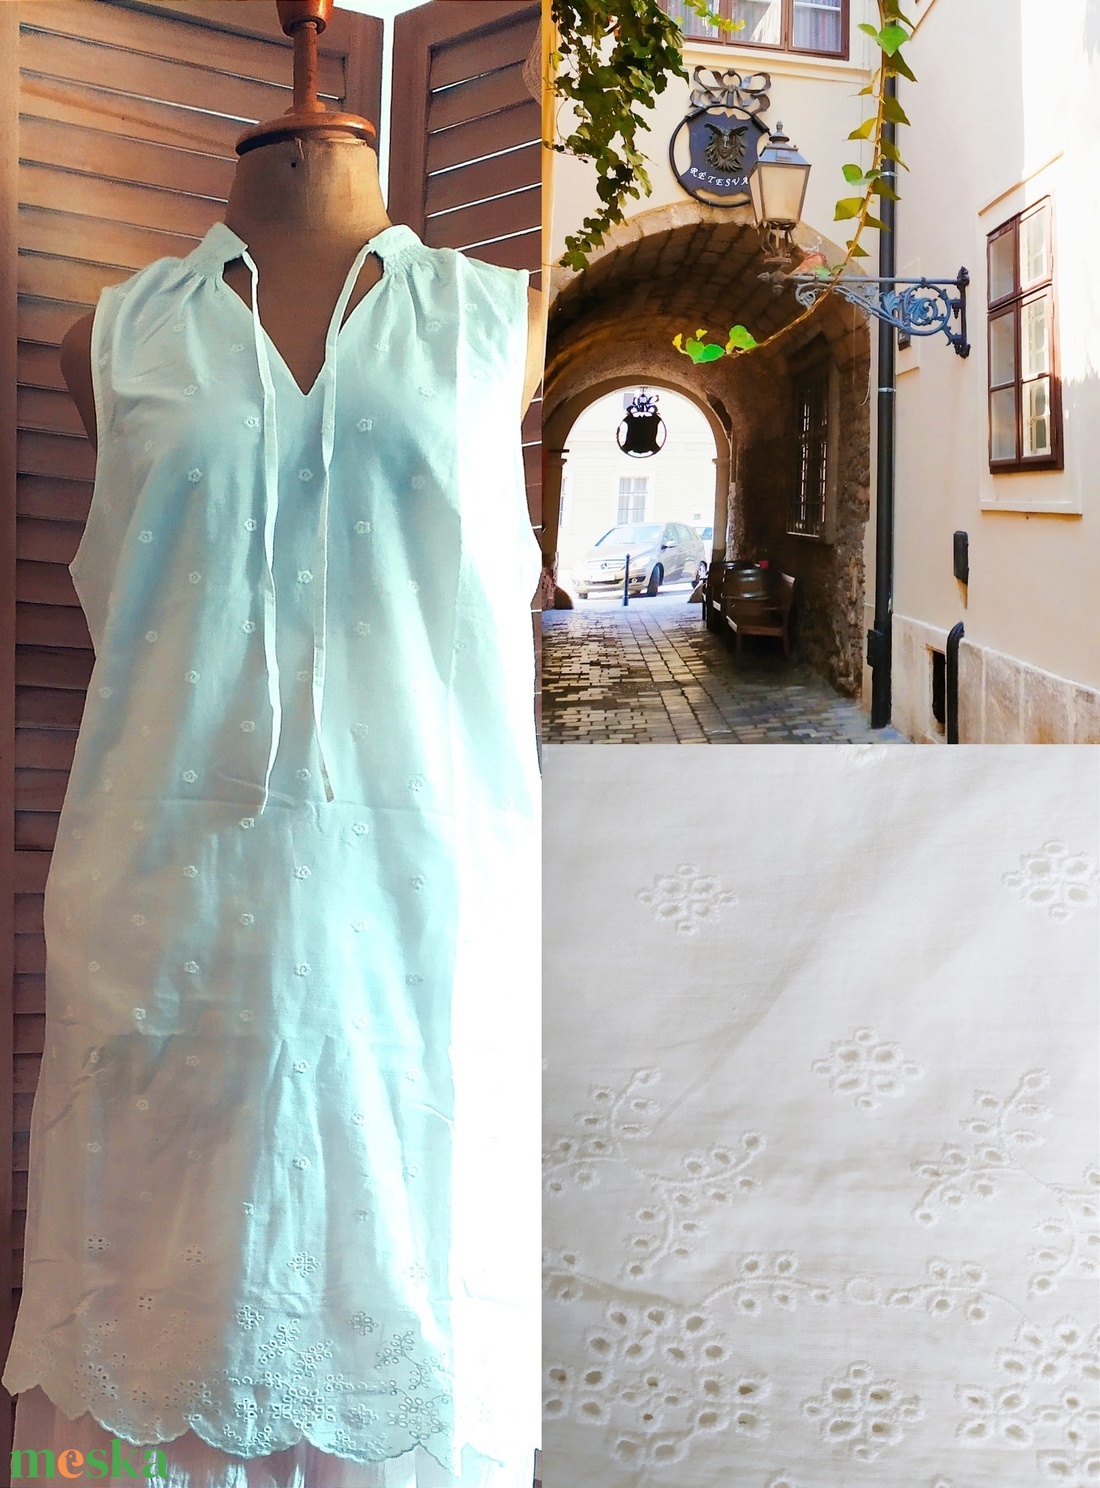 Lenruha hacuka Madeirás vászon  ruha 44-es ajándék fürdősó Lagenlook stílushoz is  - ruha & divat - női ruha - blézer & kosztüm - Meska.hu